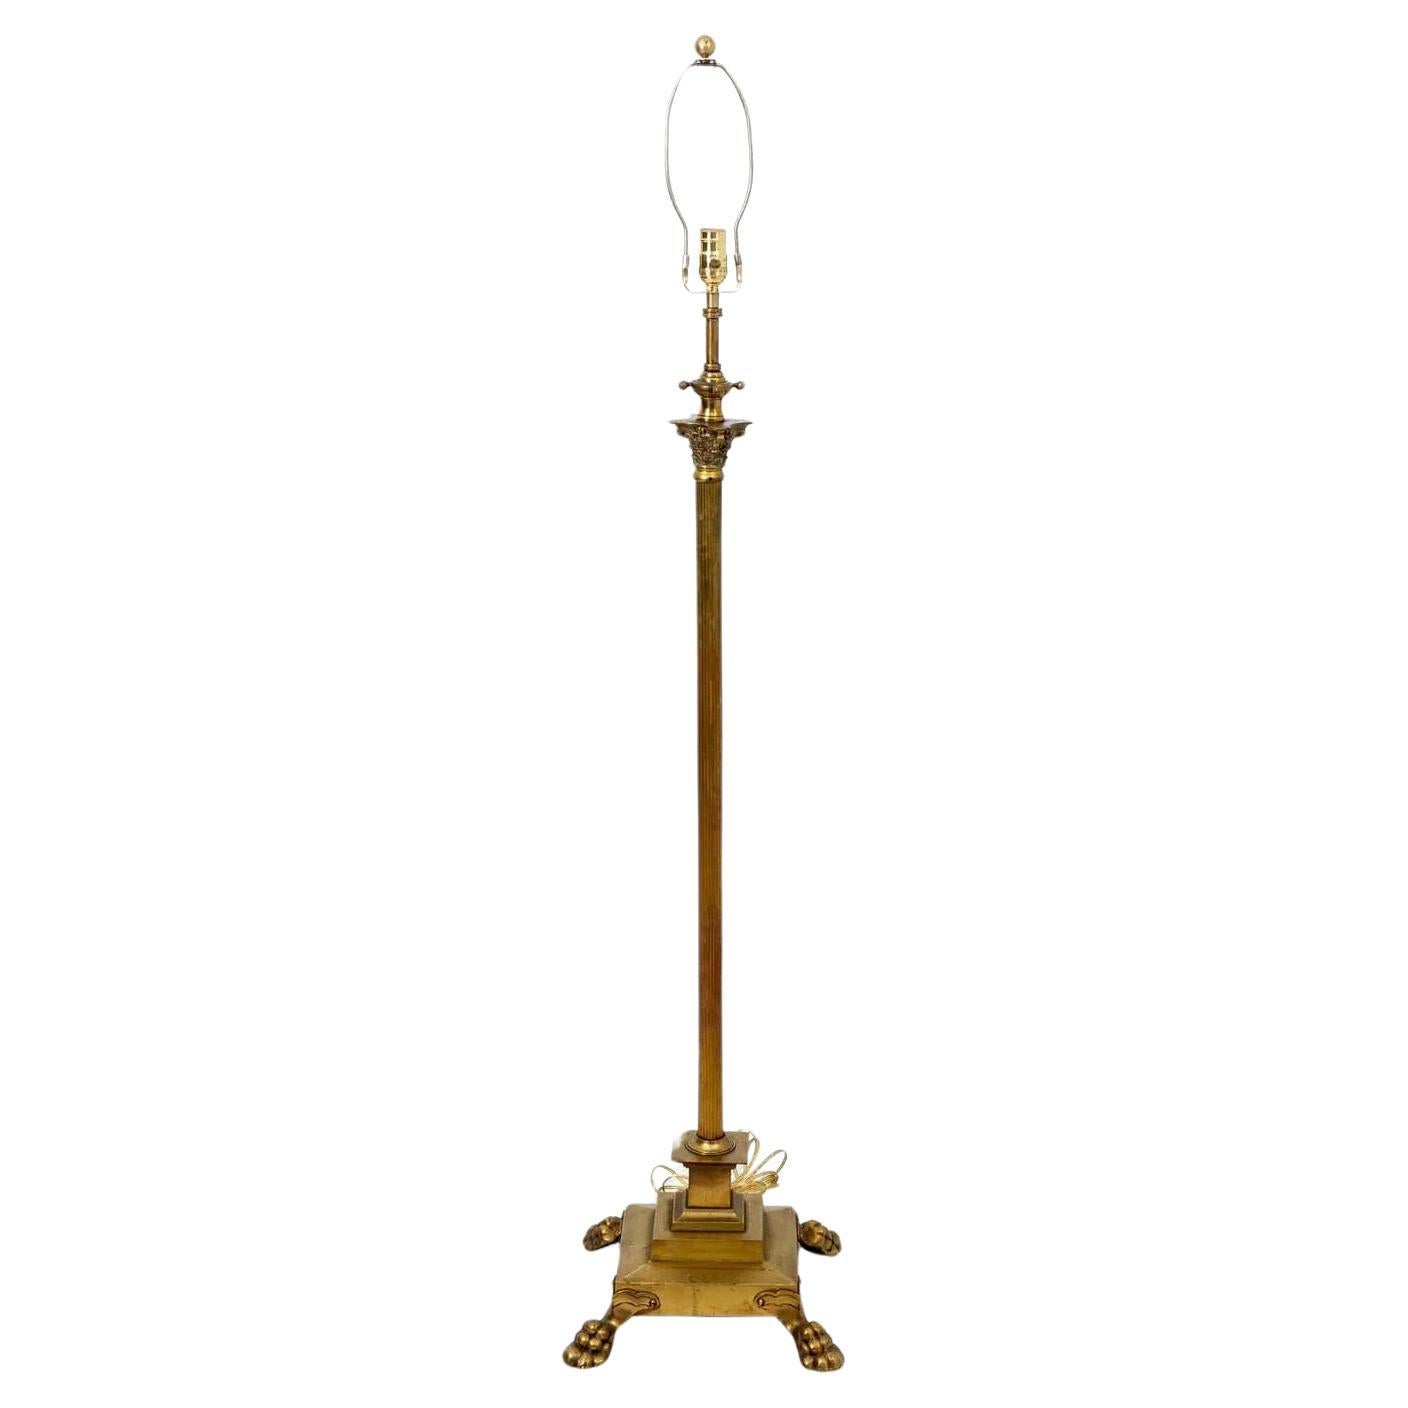 Regency Revival Floor Lamps